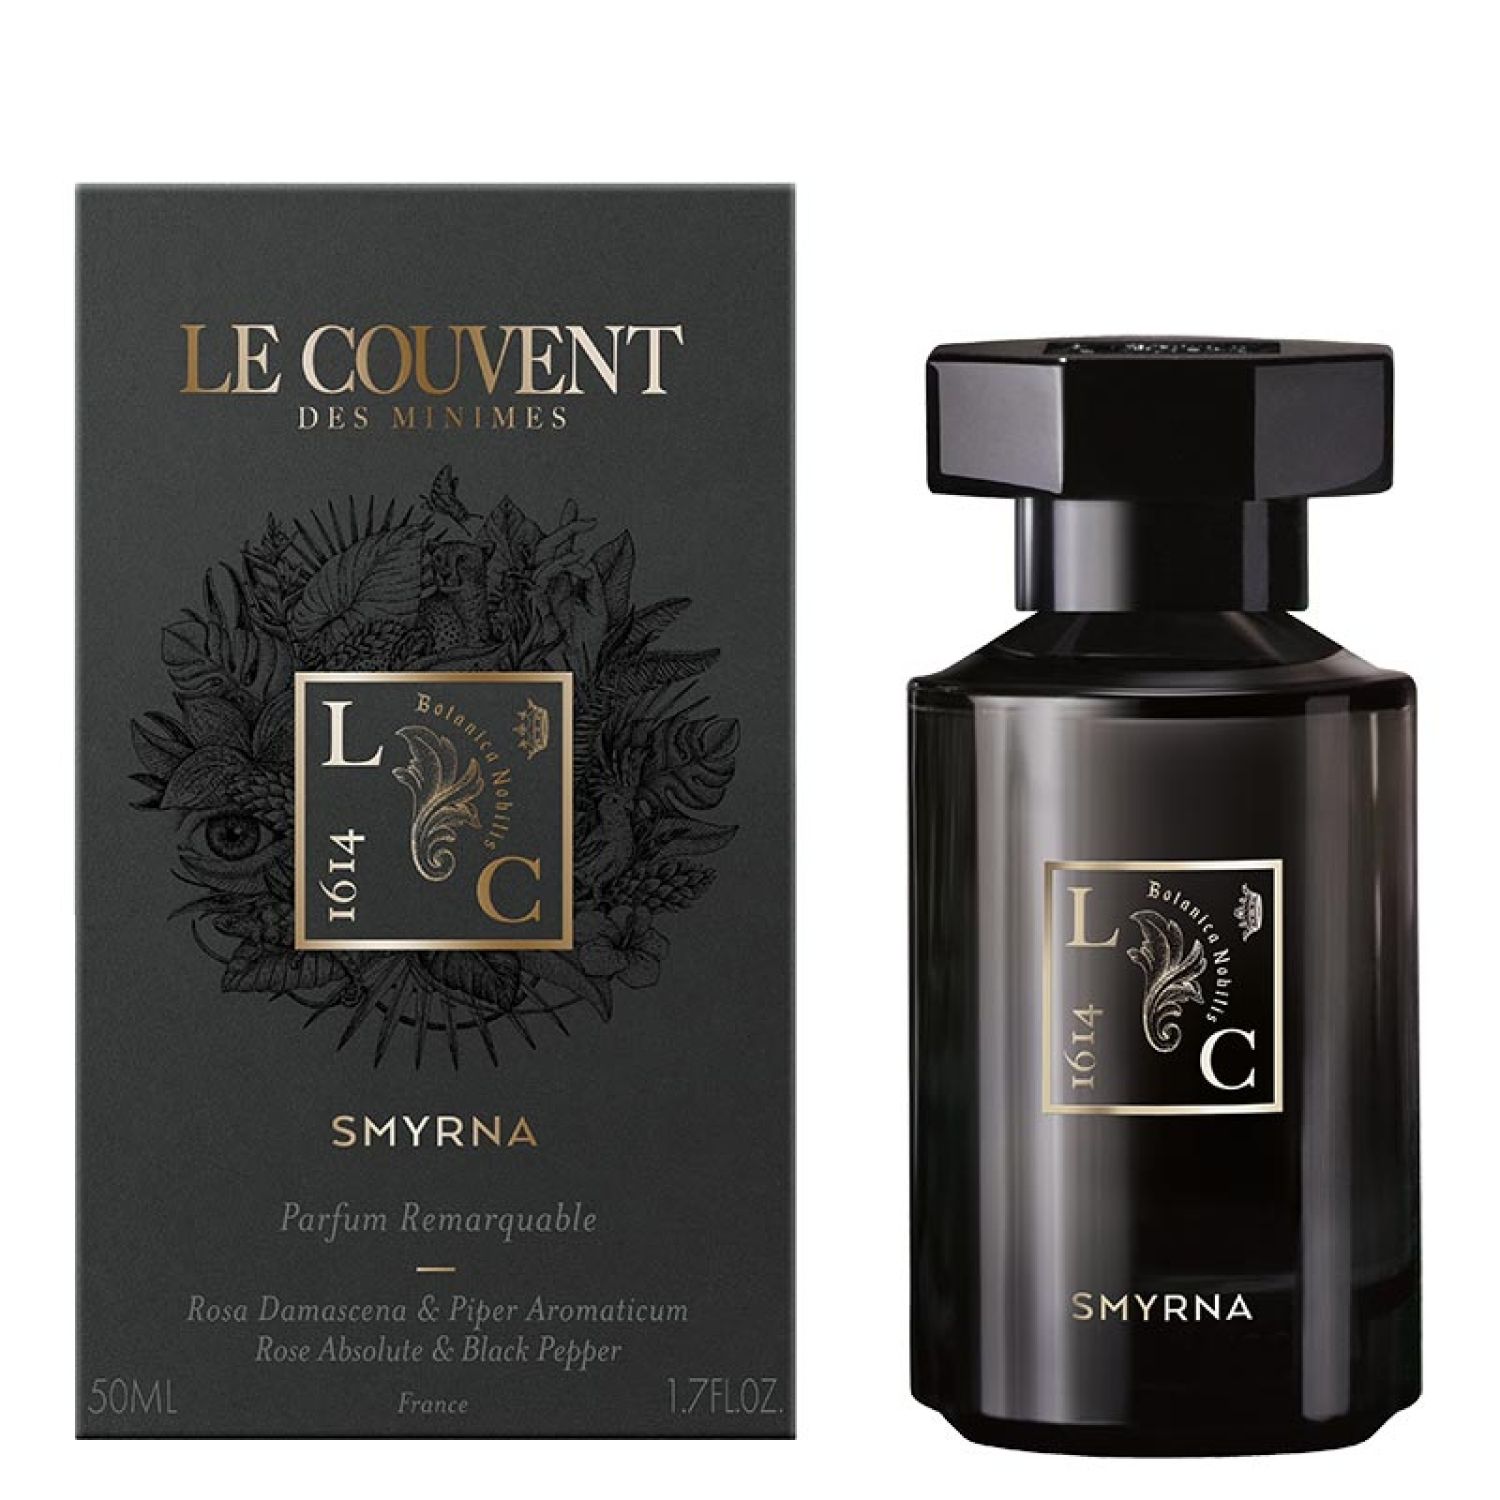 Remarquable Smyrna Eau de Parfum 50 ml